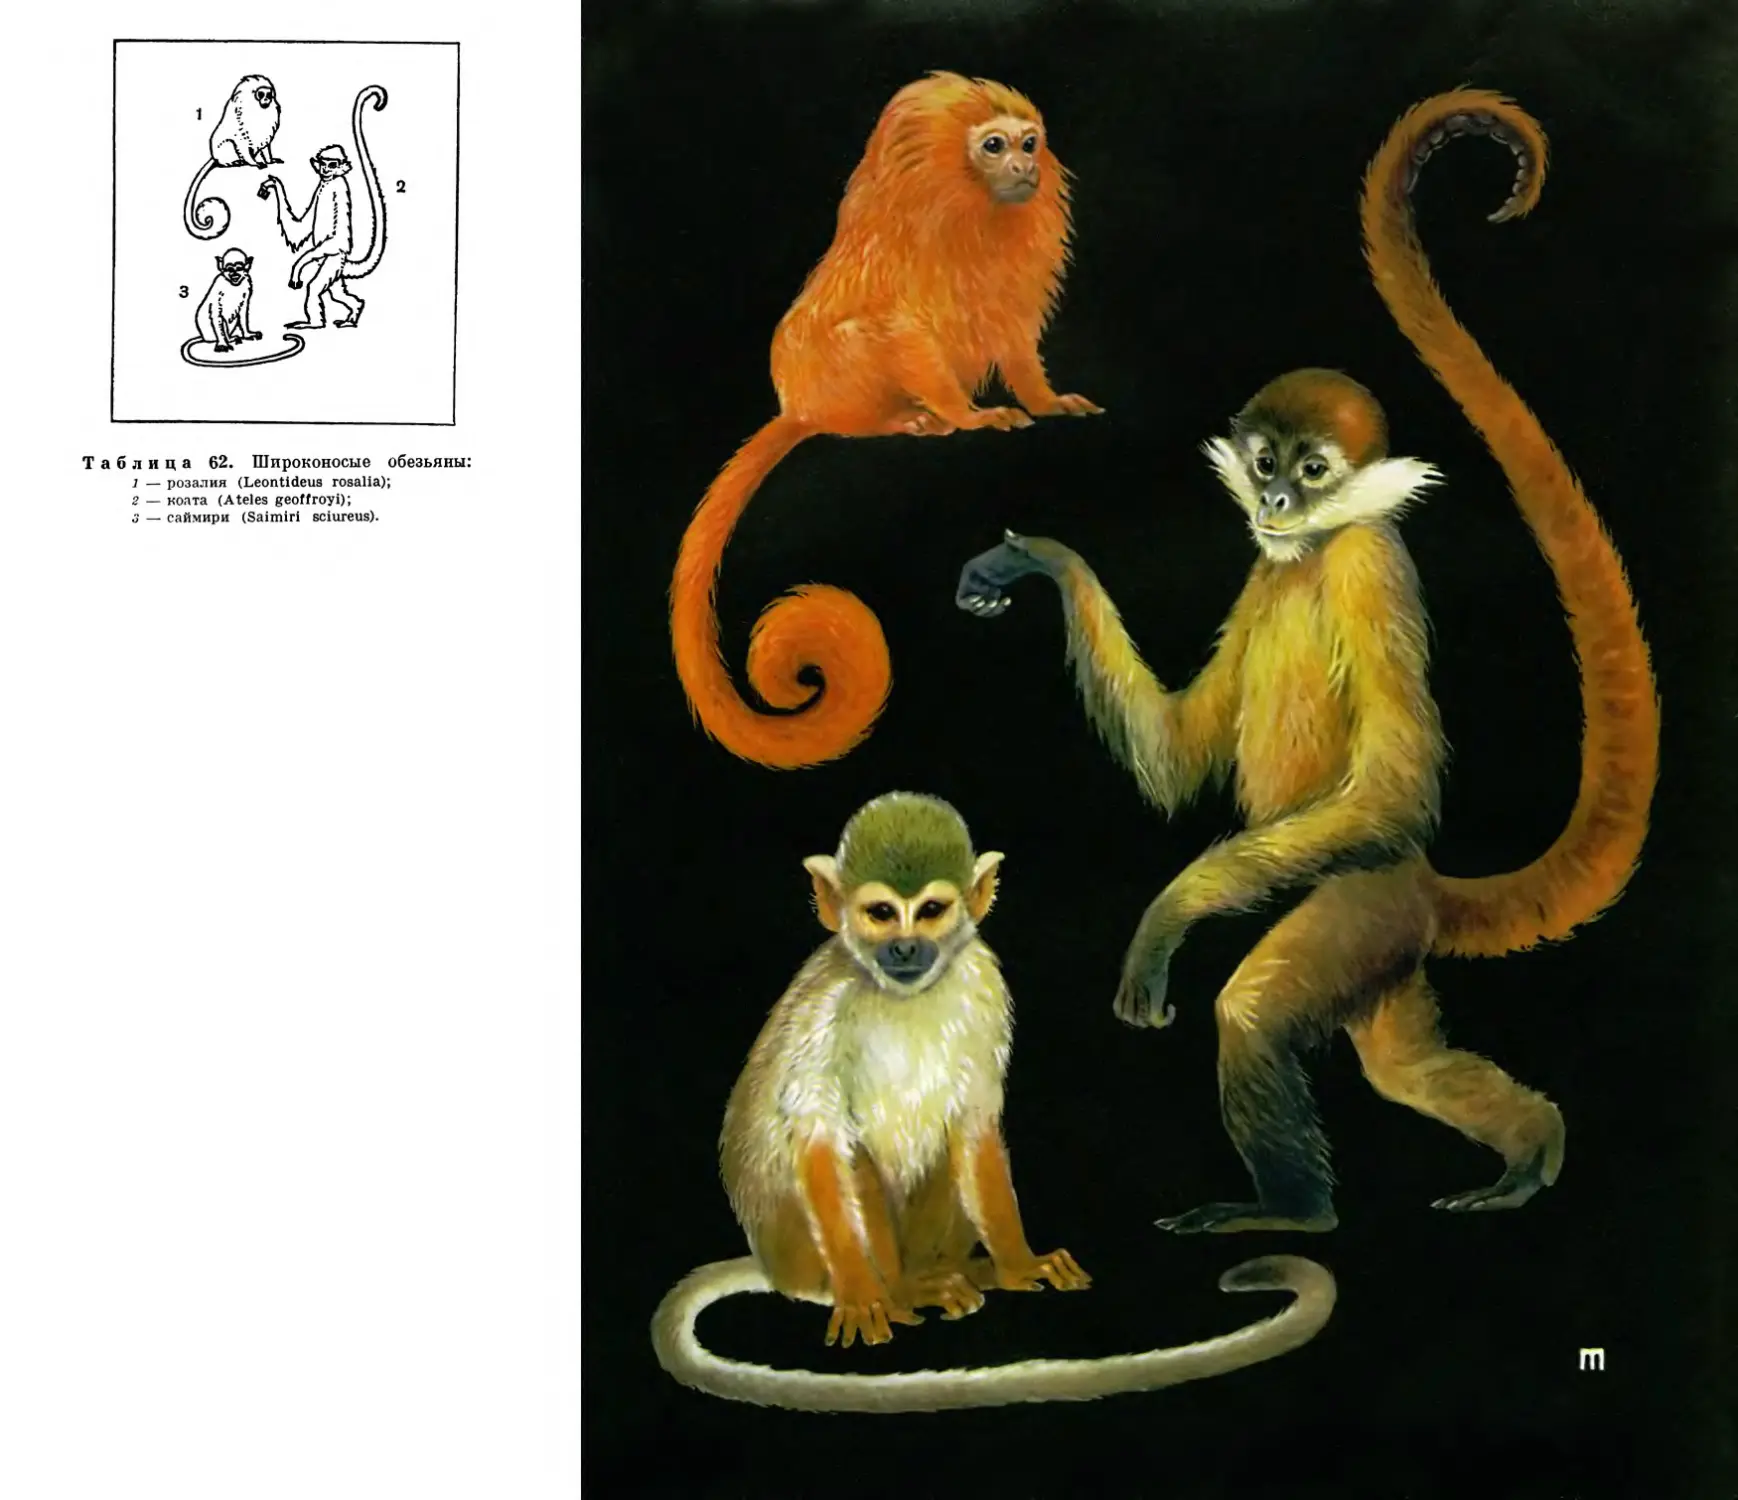 62. Широконосые обезьяны - саймири